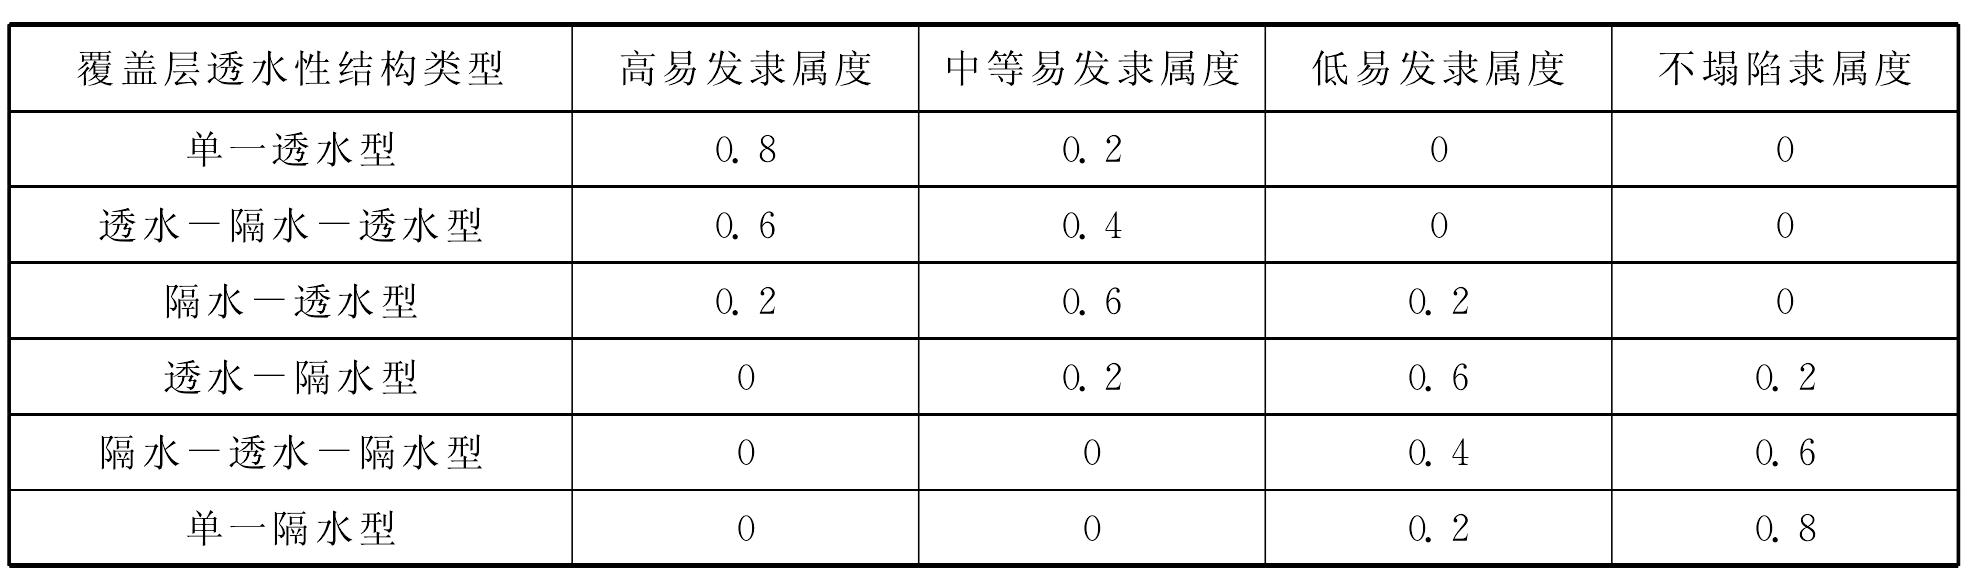 6.4 广州市岩溶地面塌陷易发性评价模型